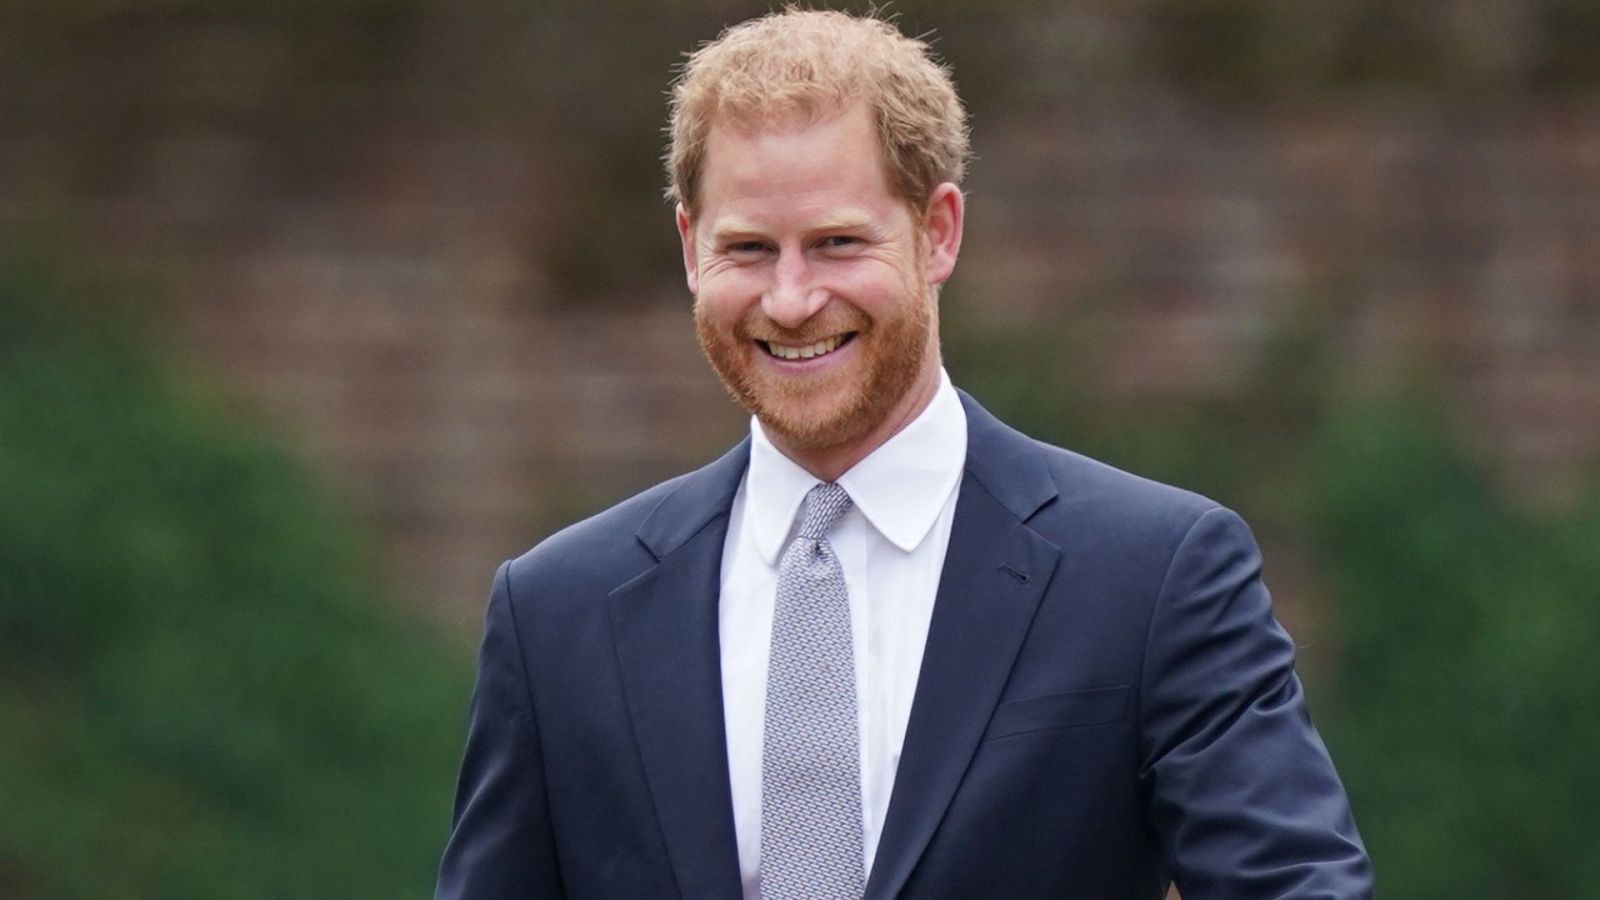 El príncipe Harry sonríe a cámara vestido de traje y corbata